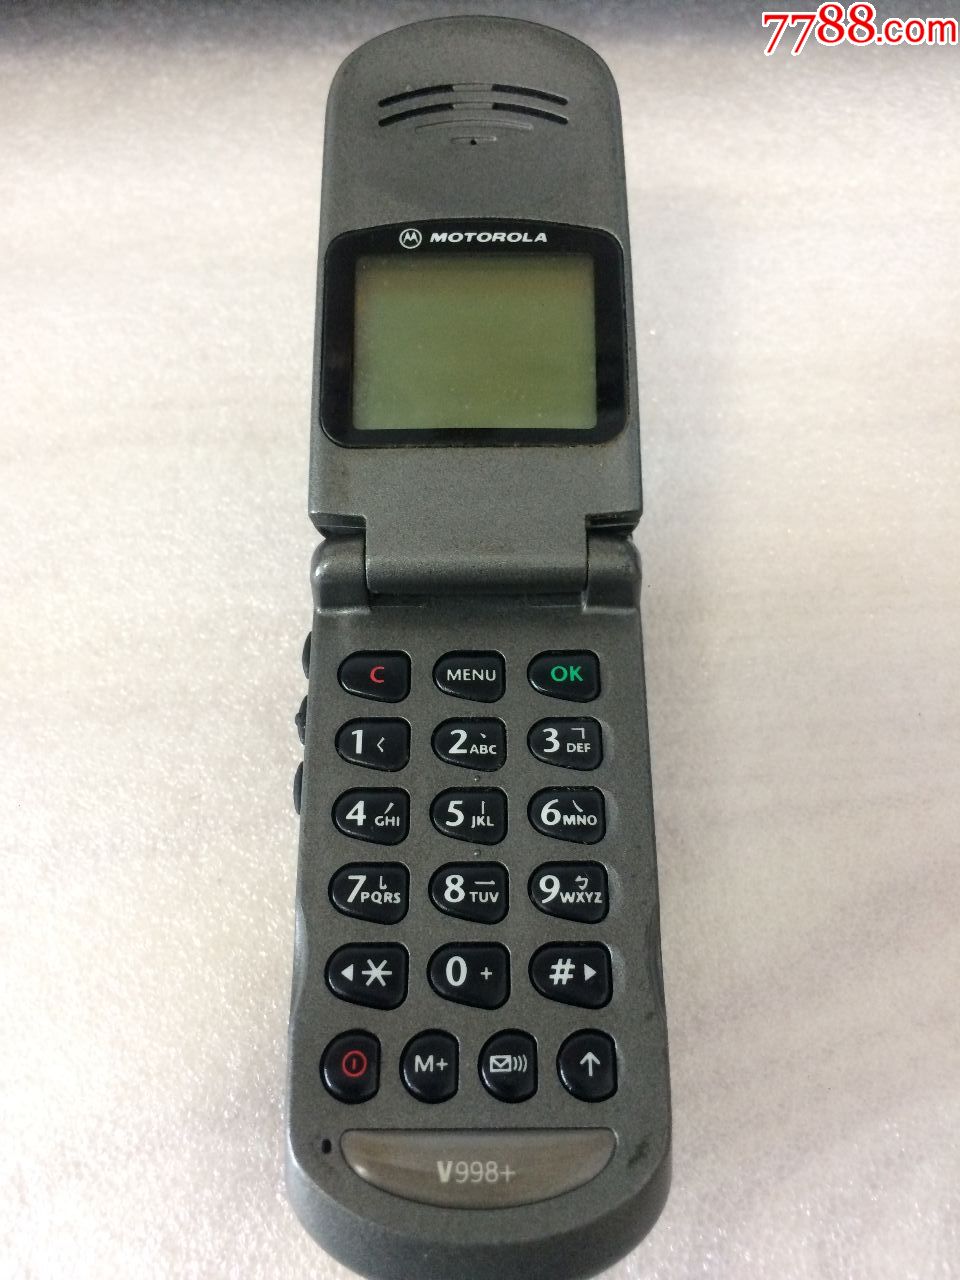 一台经典收藏摩托罗拉v998 翻盖手机